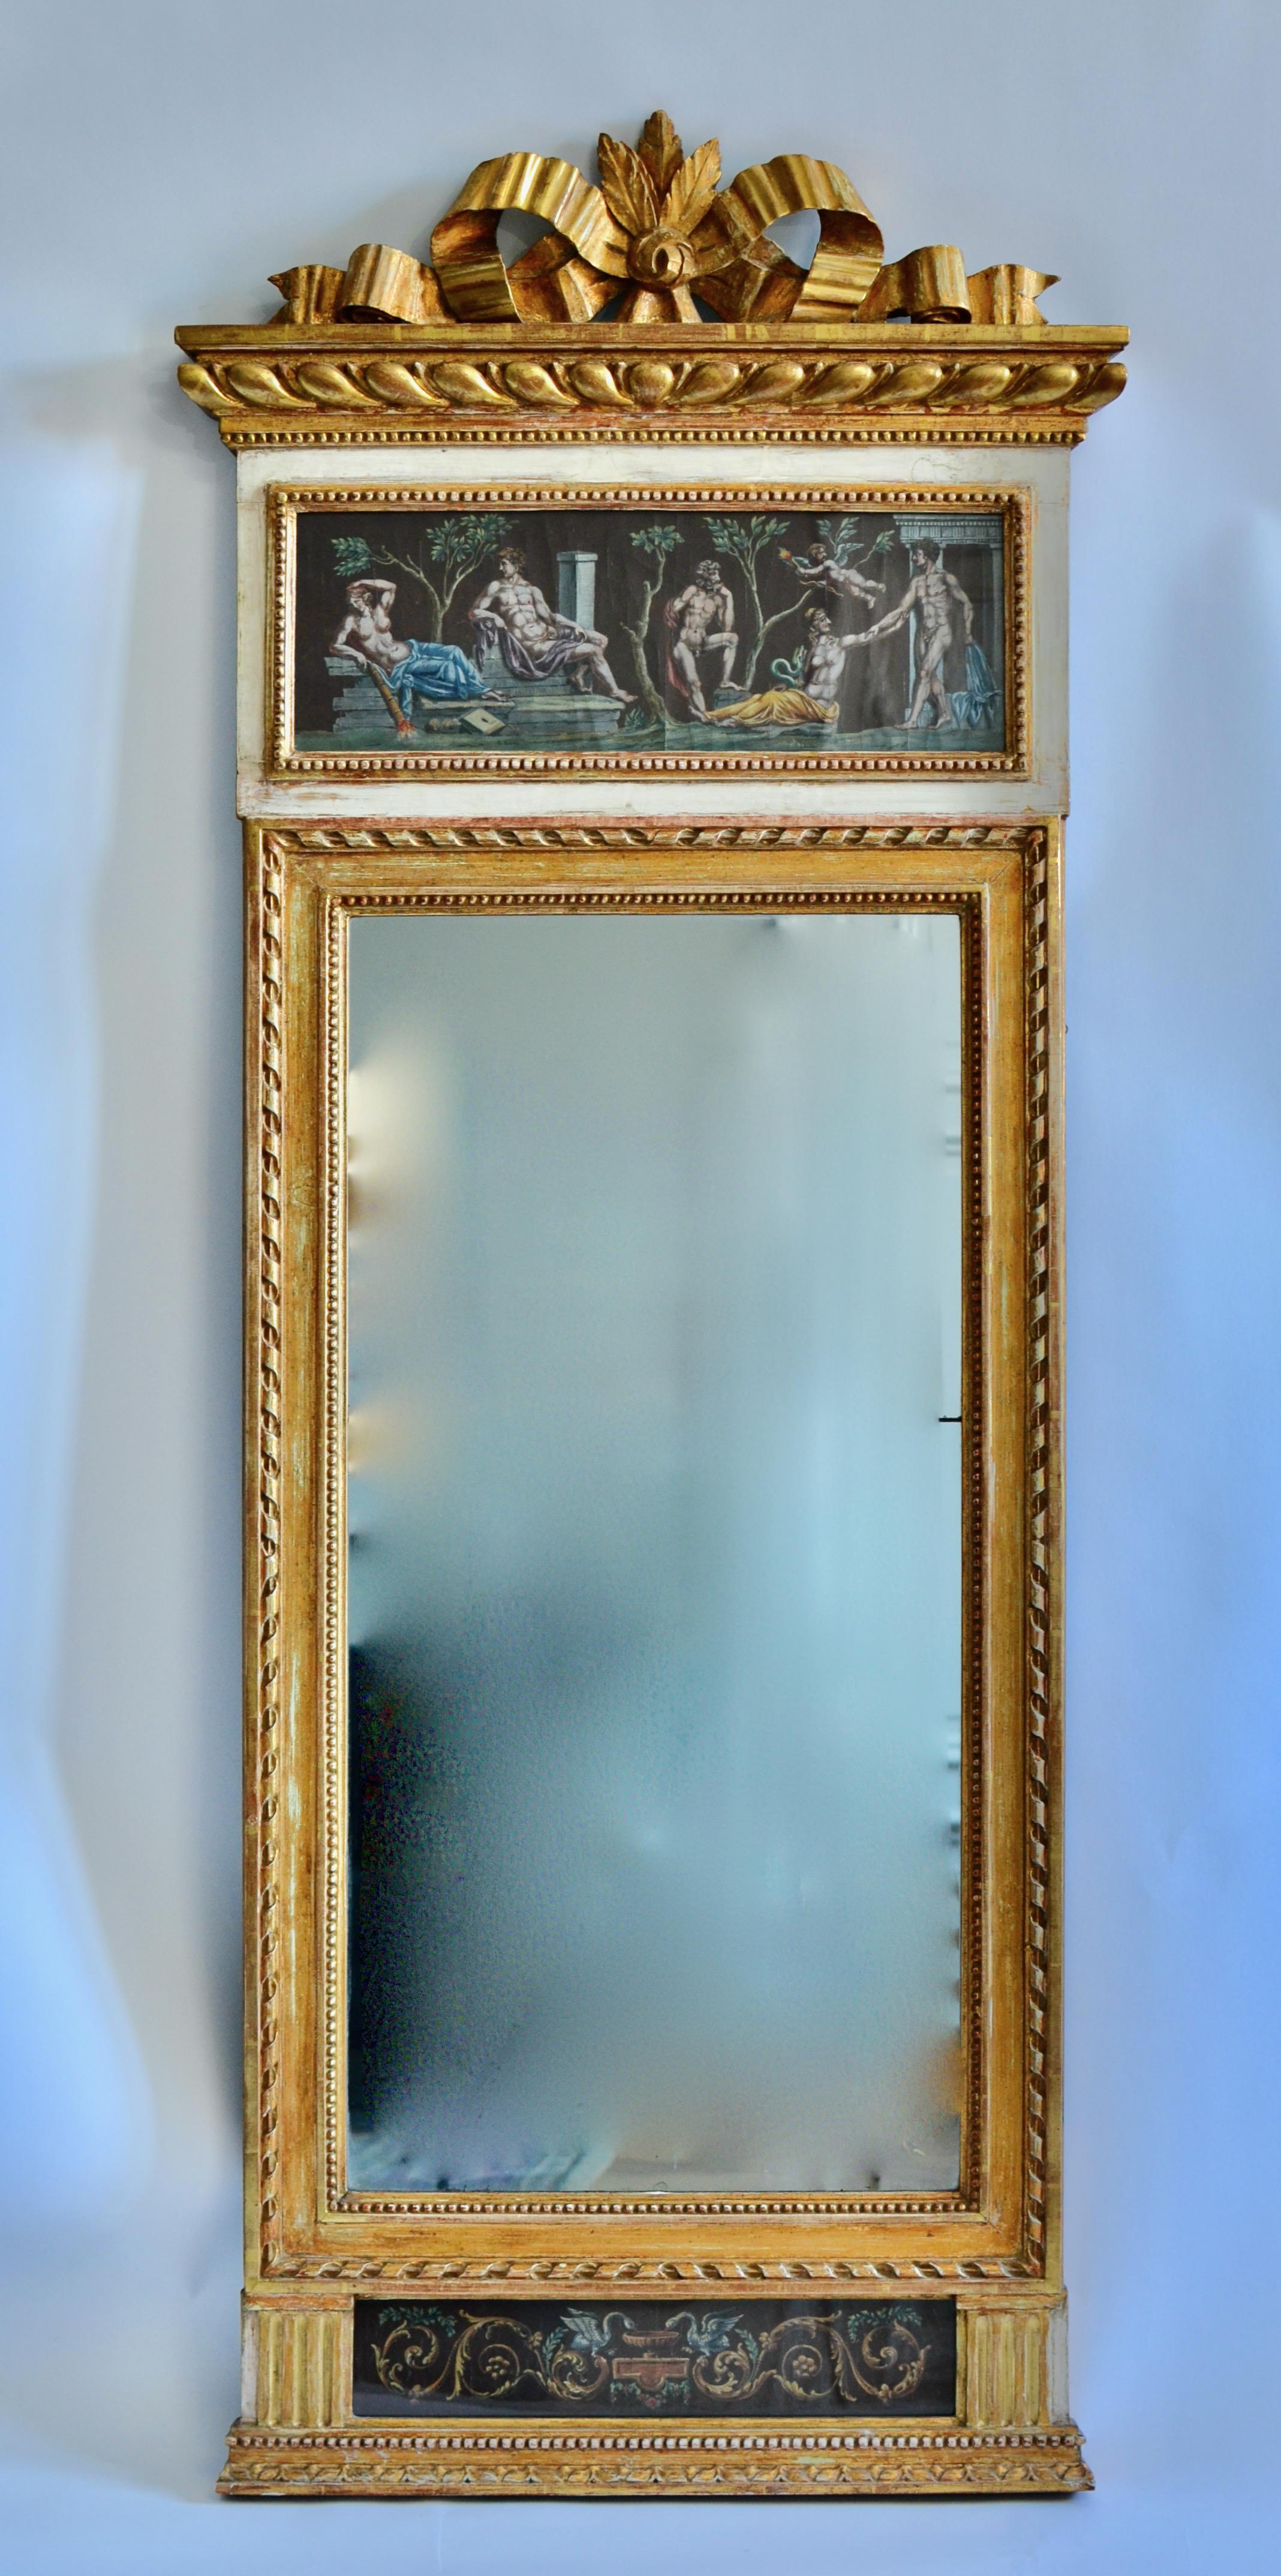 Ein feiner Spiegel aus vergoldetem Holz mit Gouachen, hergestellt in Stockholm um 1790. Originalvergoldung. Die Gouachen sind im neoklassischen pompejanischen Stil gemalt.